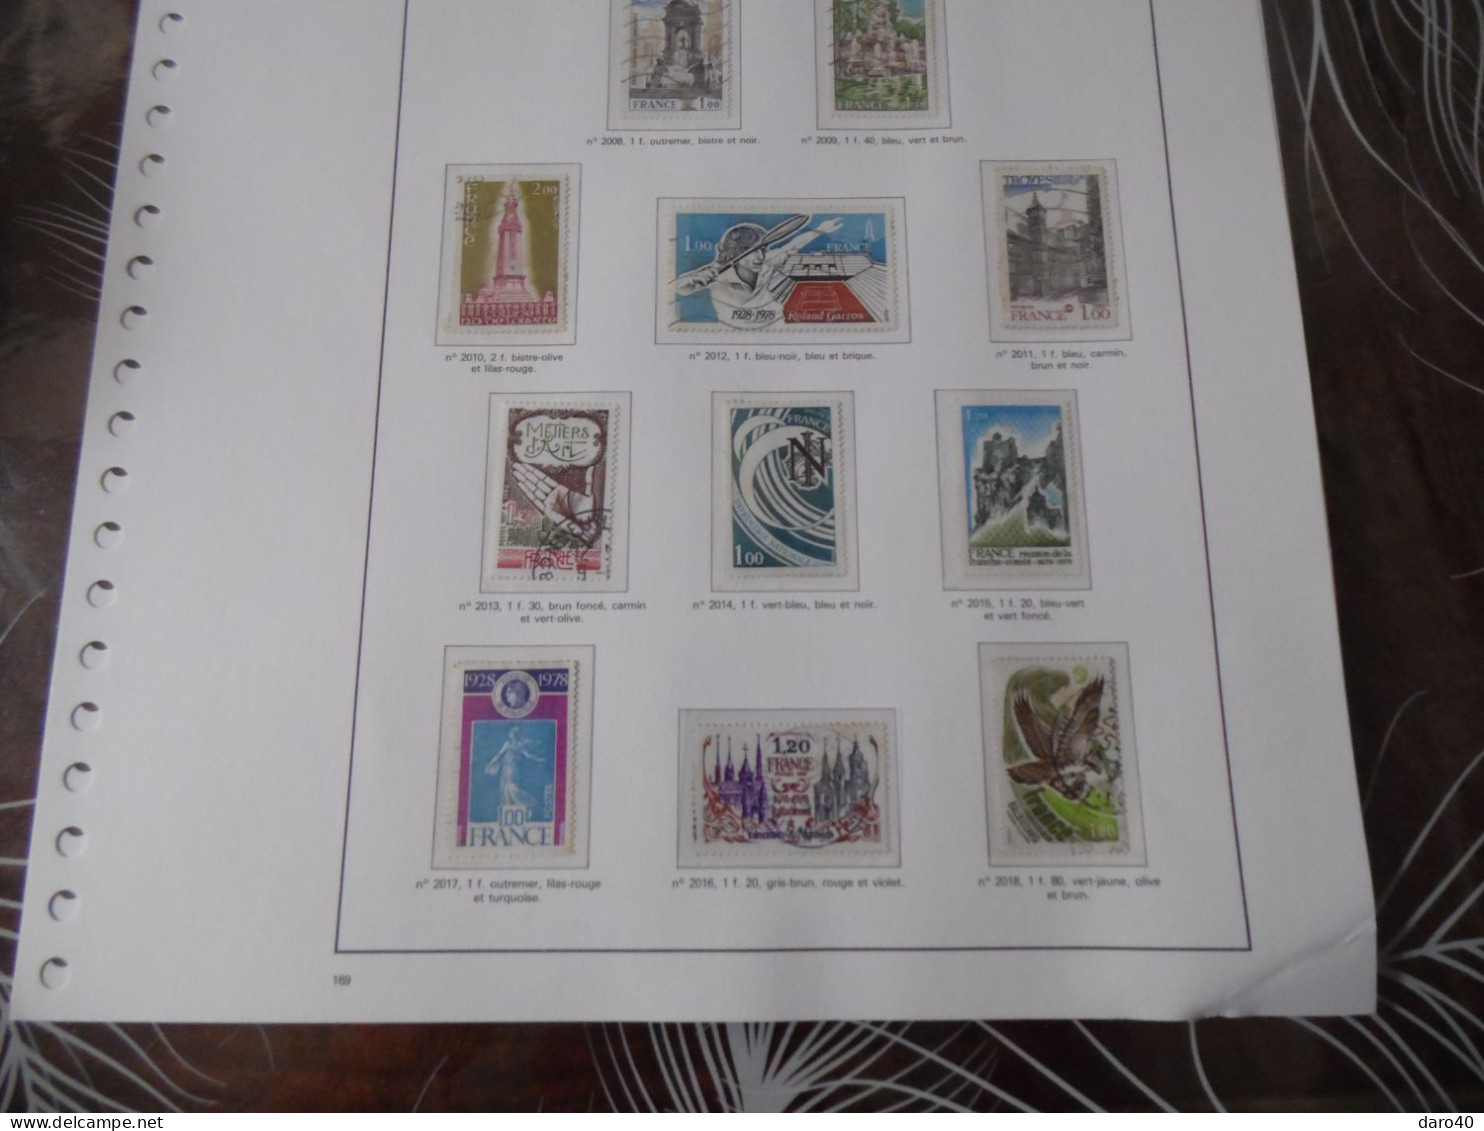 Sur des feuilles yvert et tellier timbres France neuf et obl de 1970 à 1978 et de 1991 à 1994 sous pochette transparente